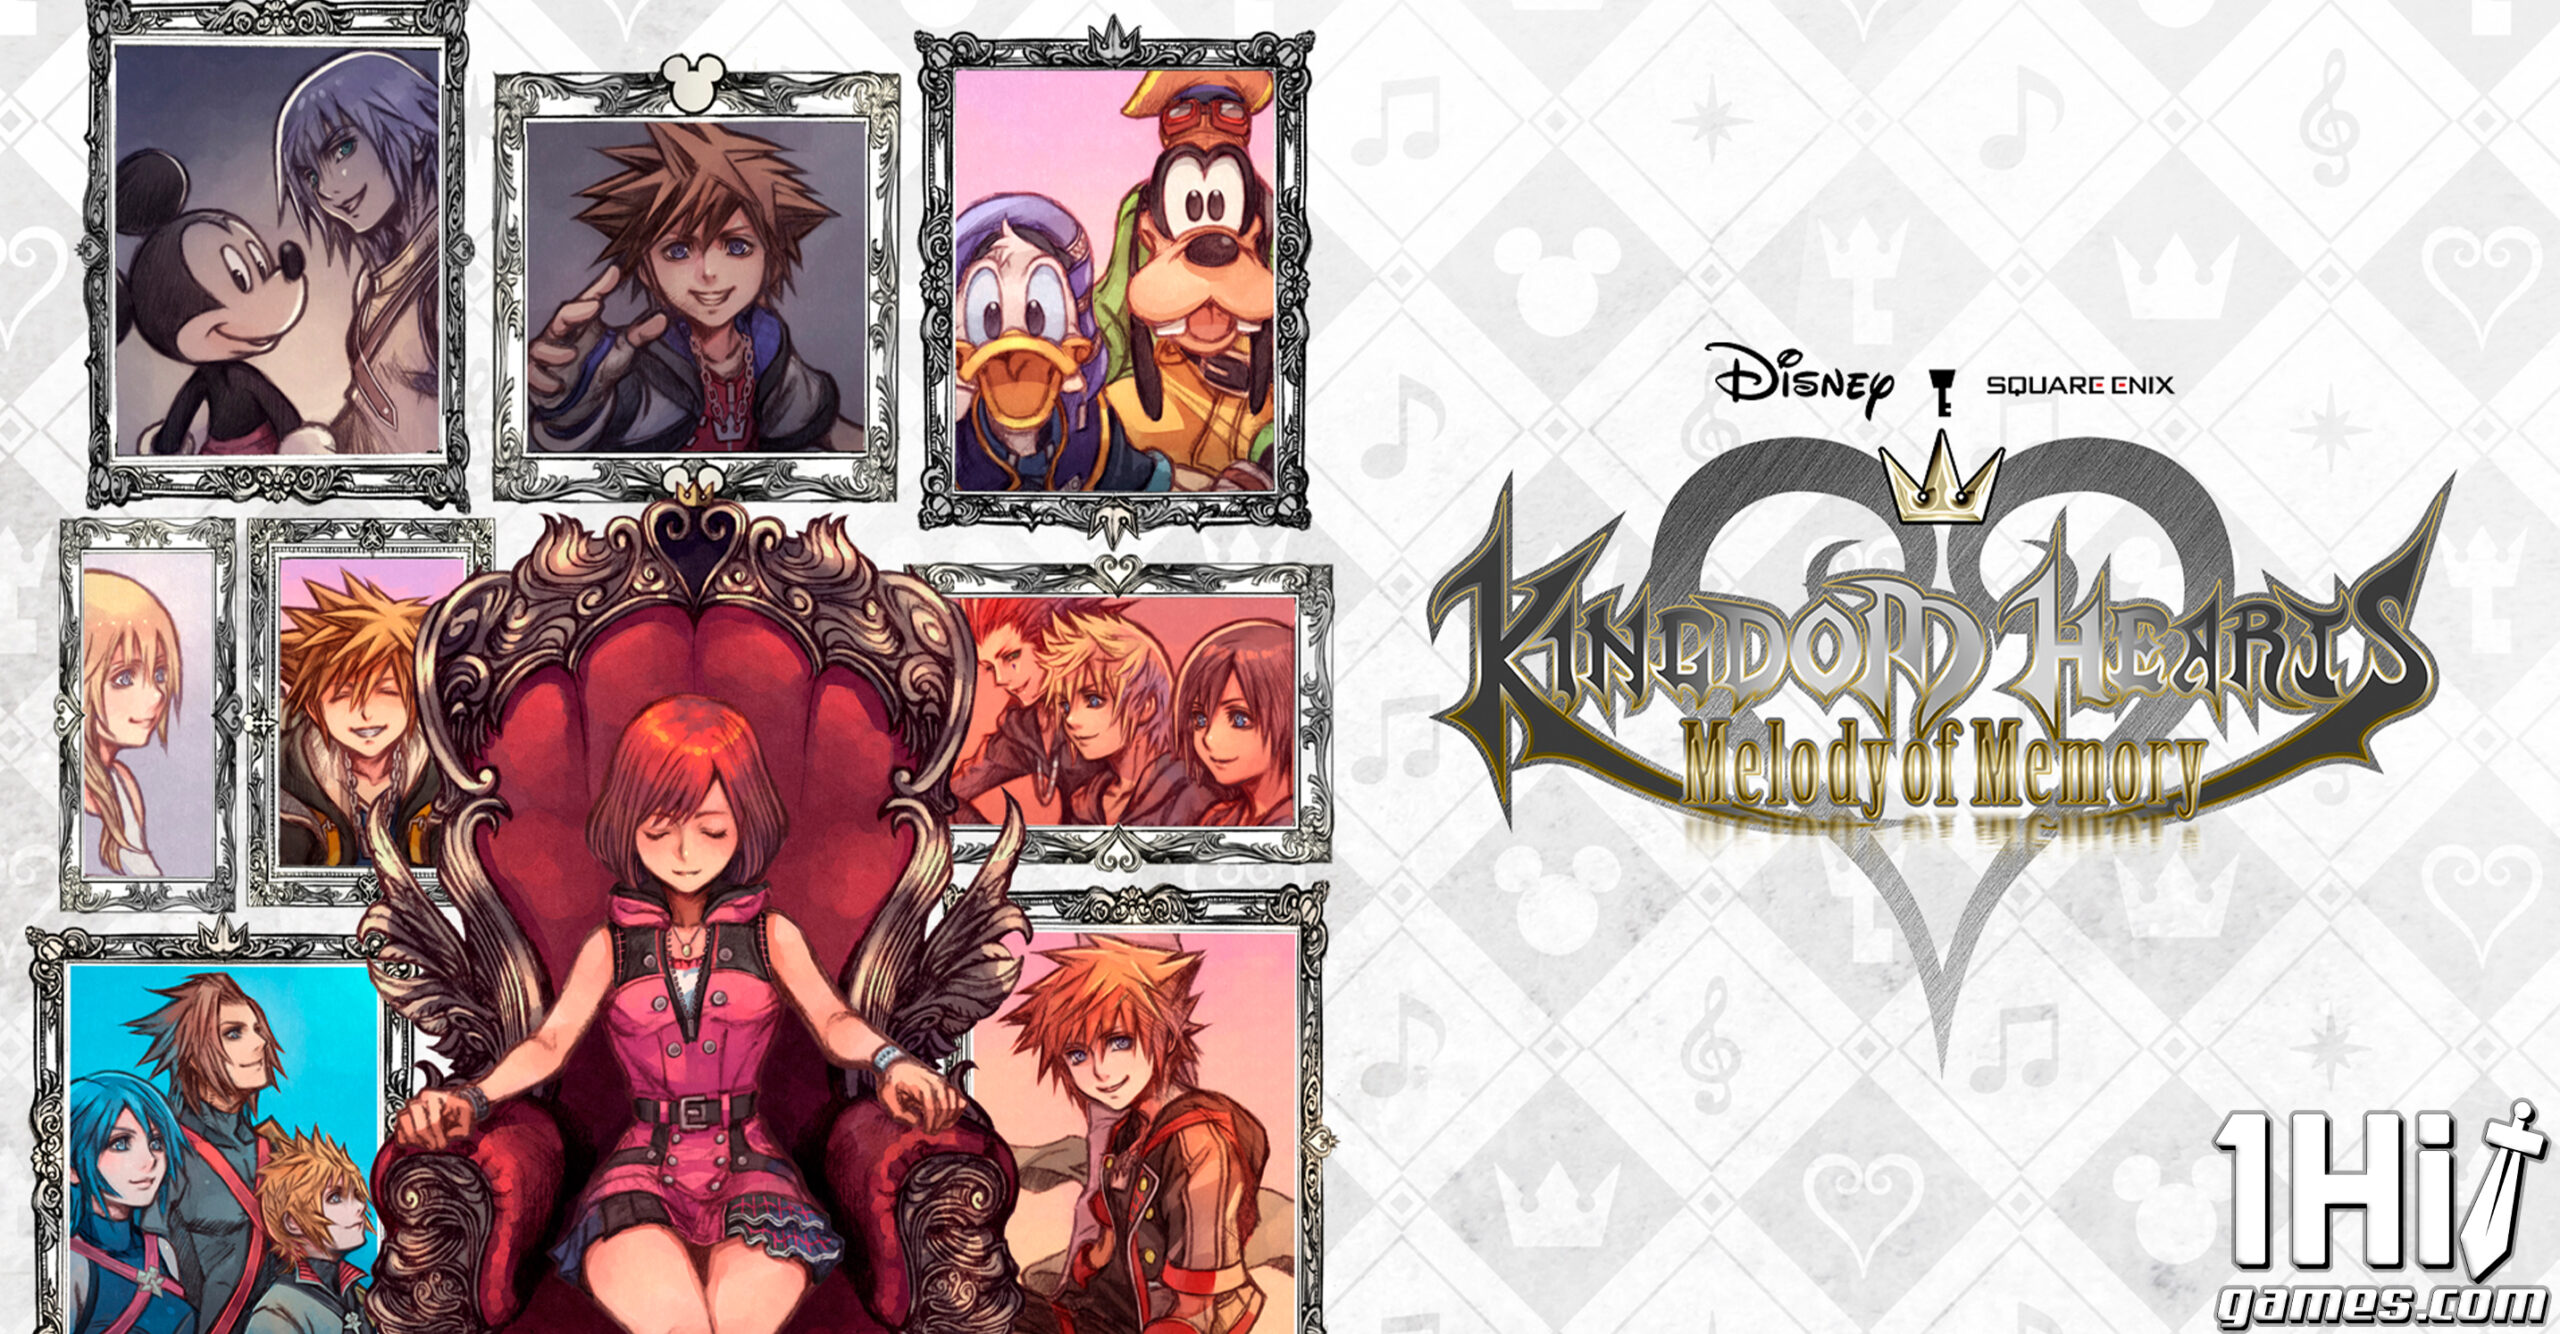 Kingdom Hearts Melody of Memory capa 1hitgames